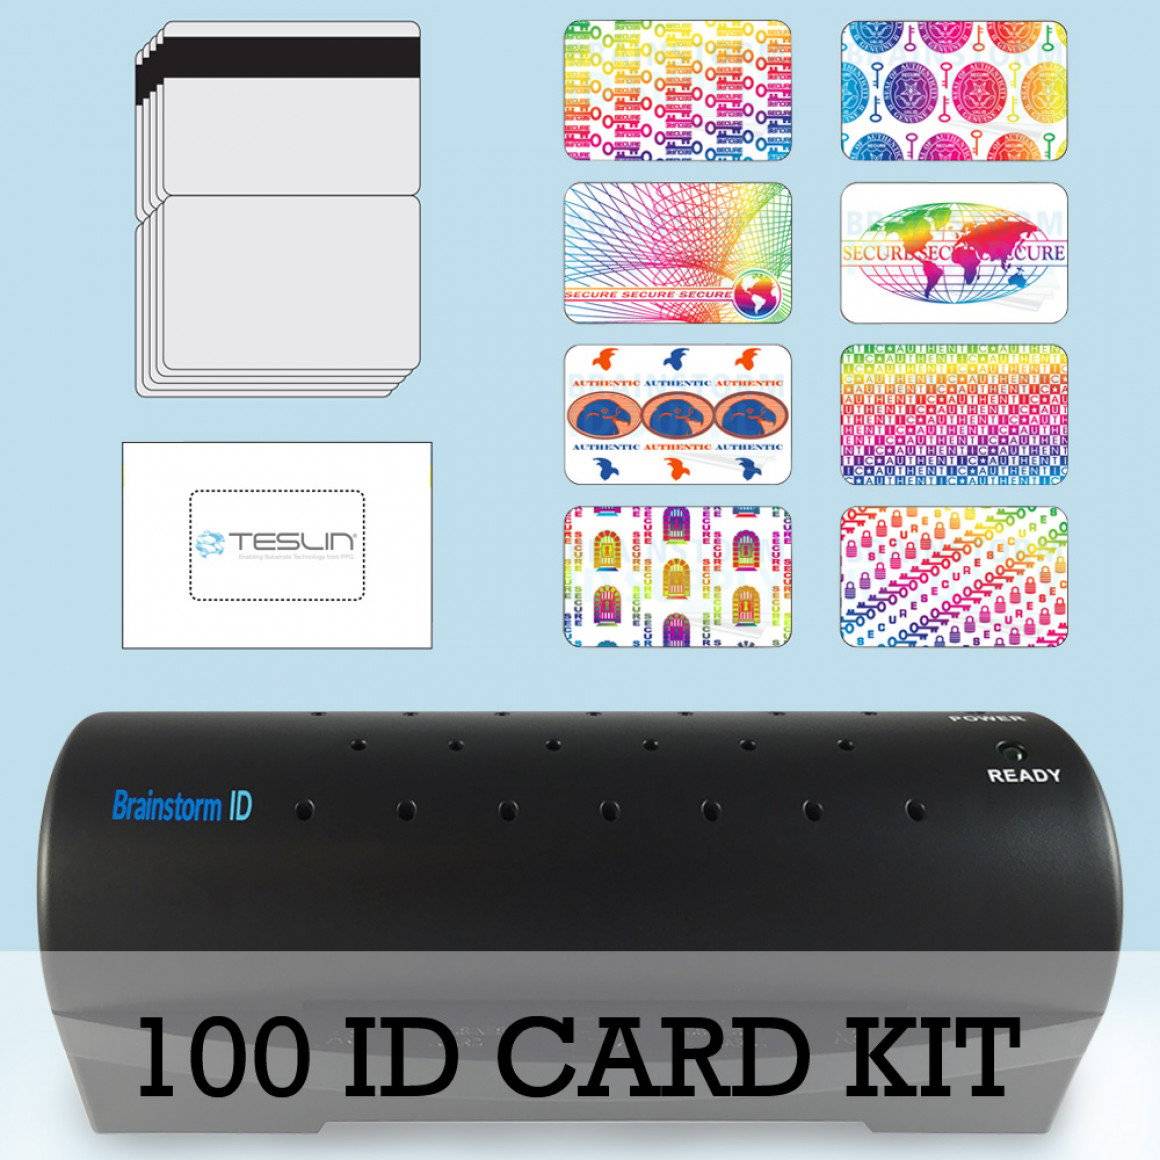 100 Card ID Kit